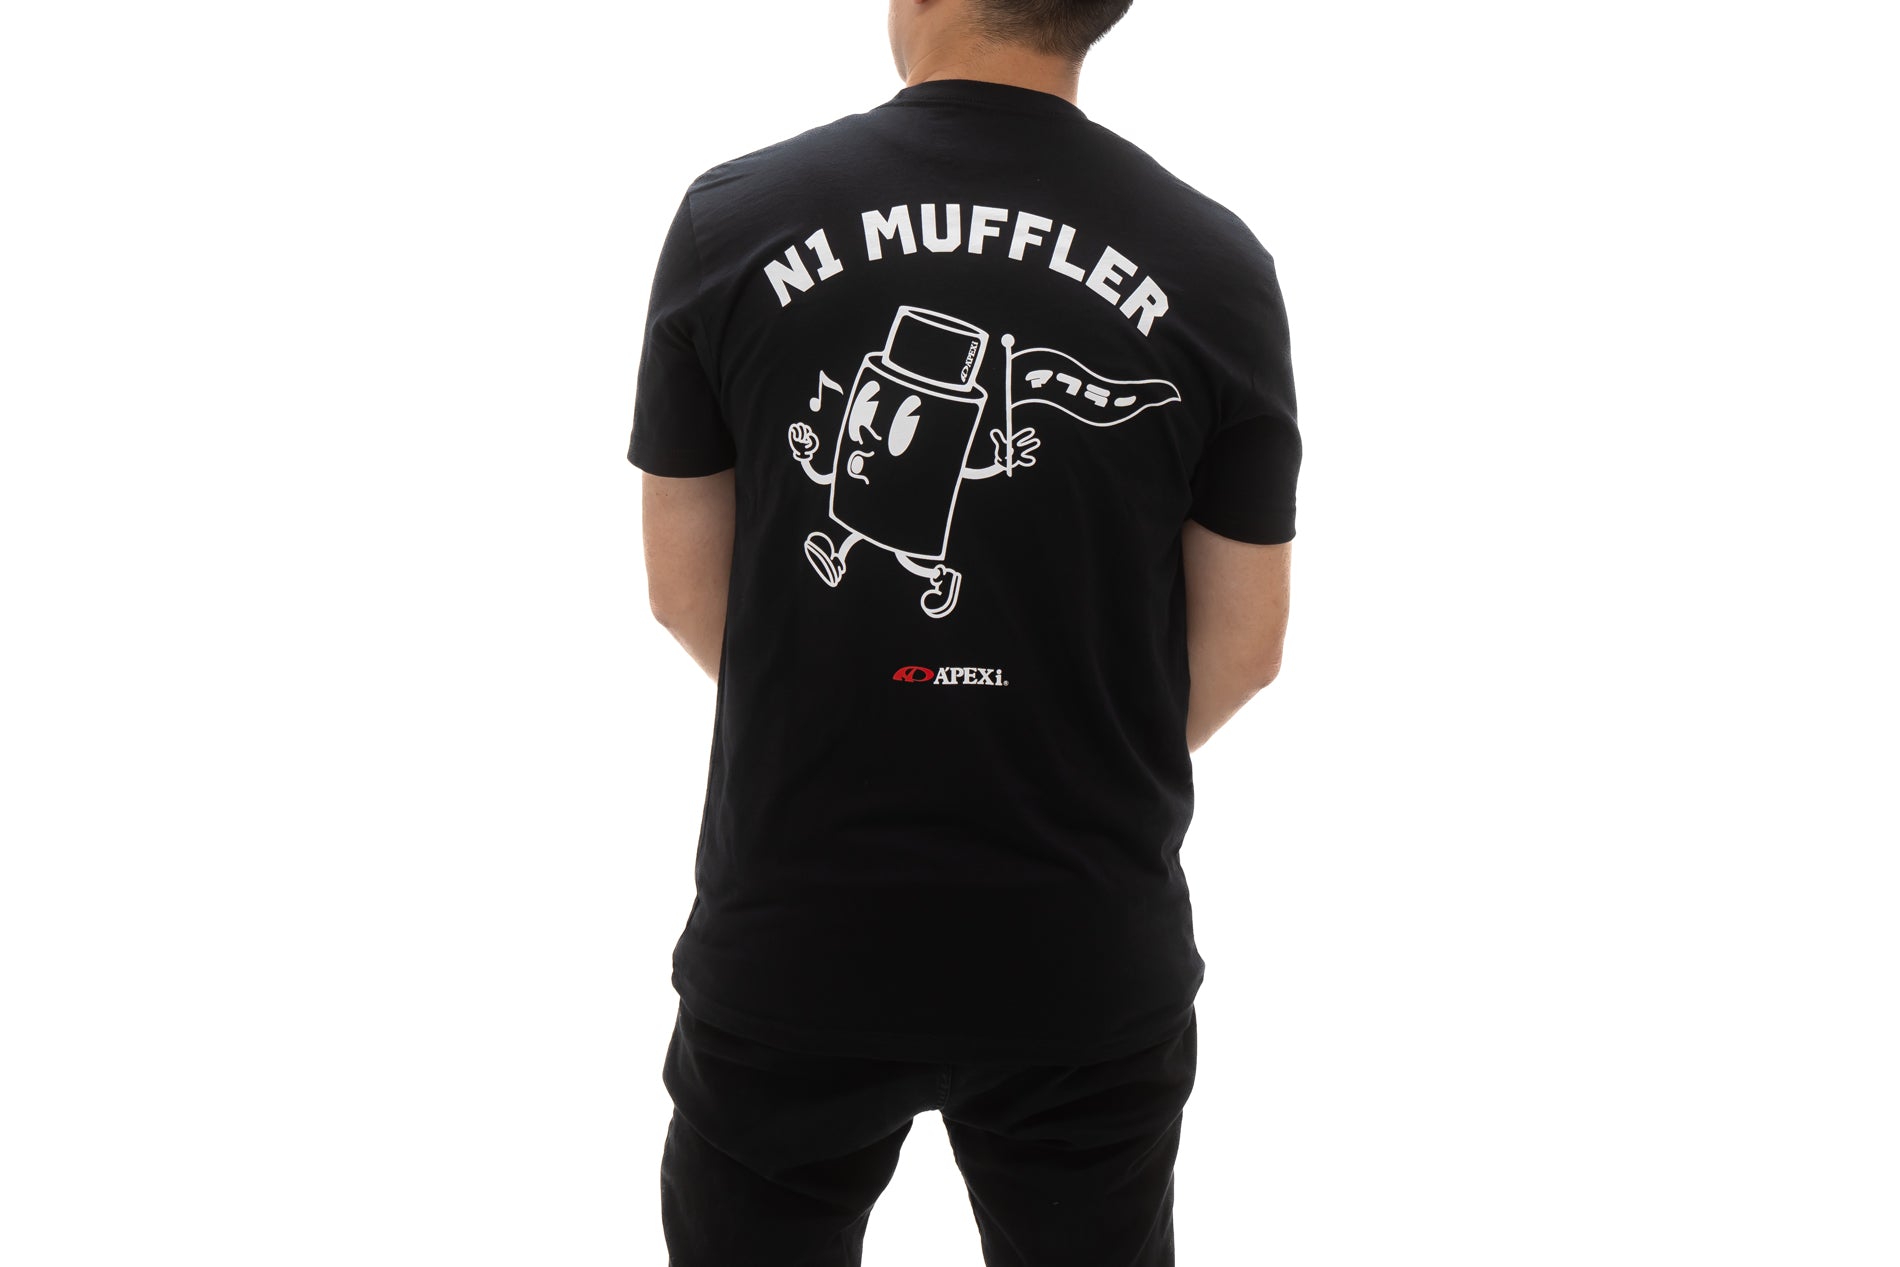 A'PEXi - A'PEXi N1 Muffler T-Shirt